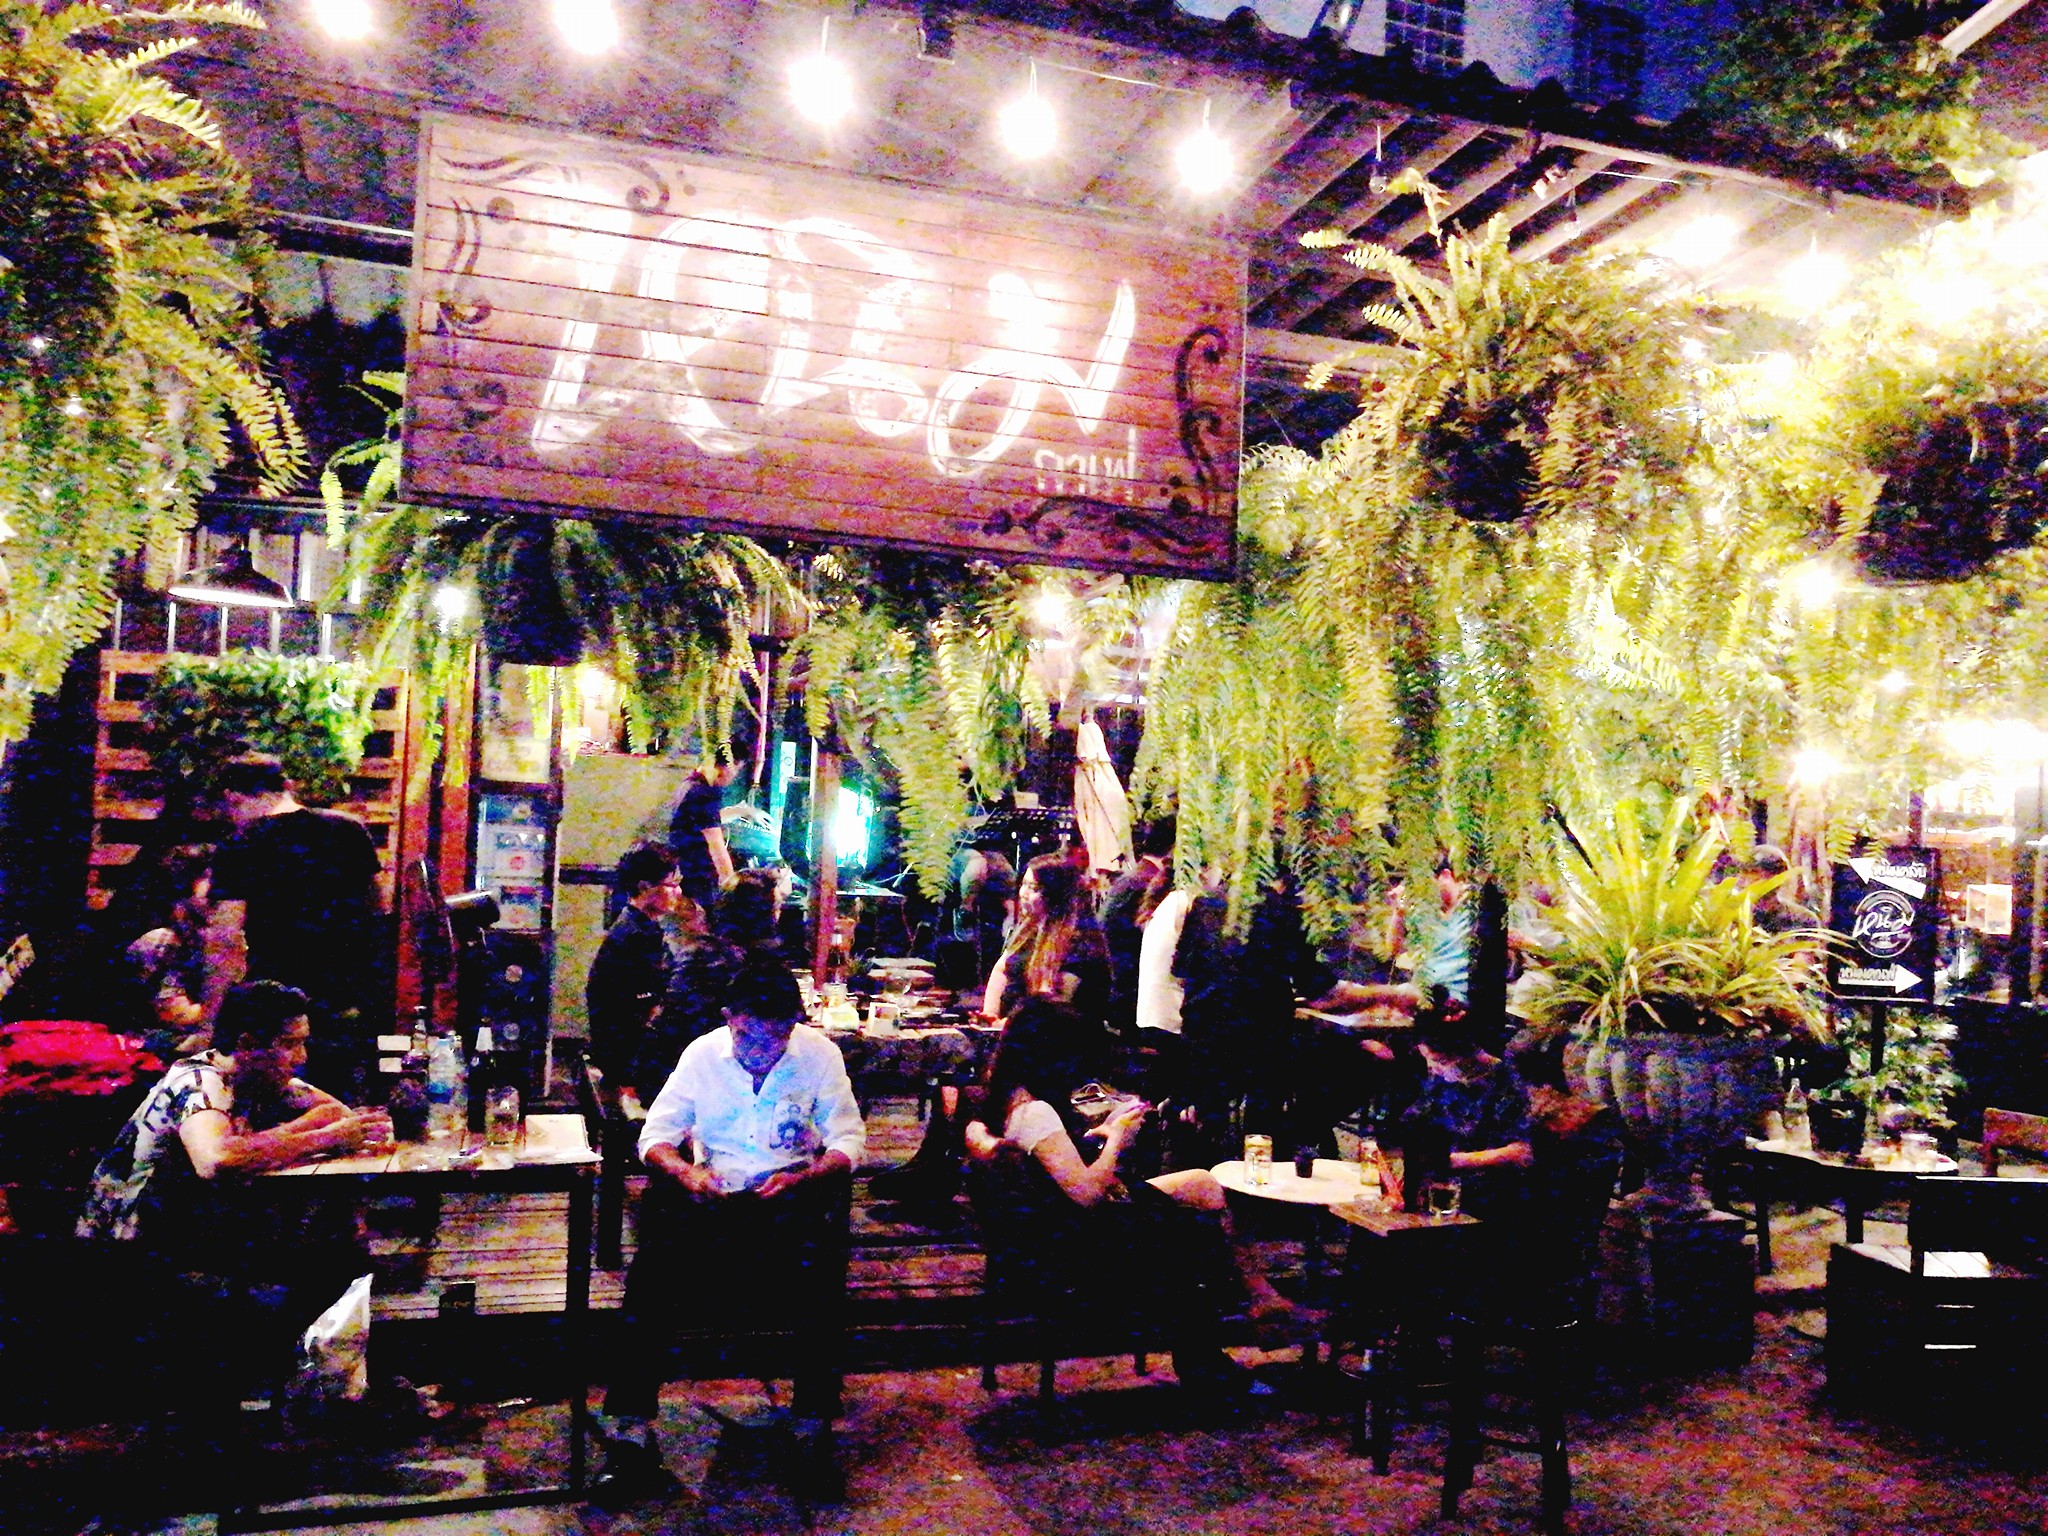 หนิม คาเฟ่ (Nim cafe) : กรุงเทพมหานคร (Bangkok)